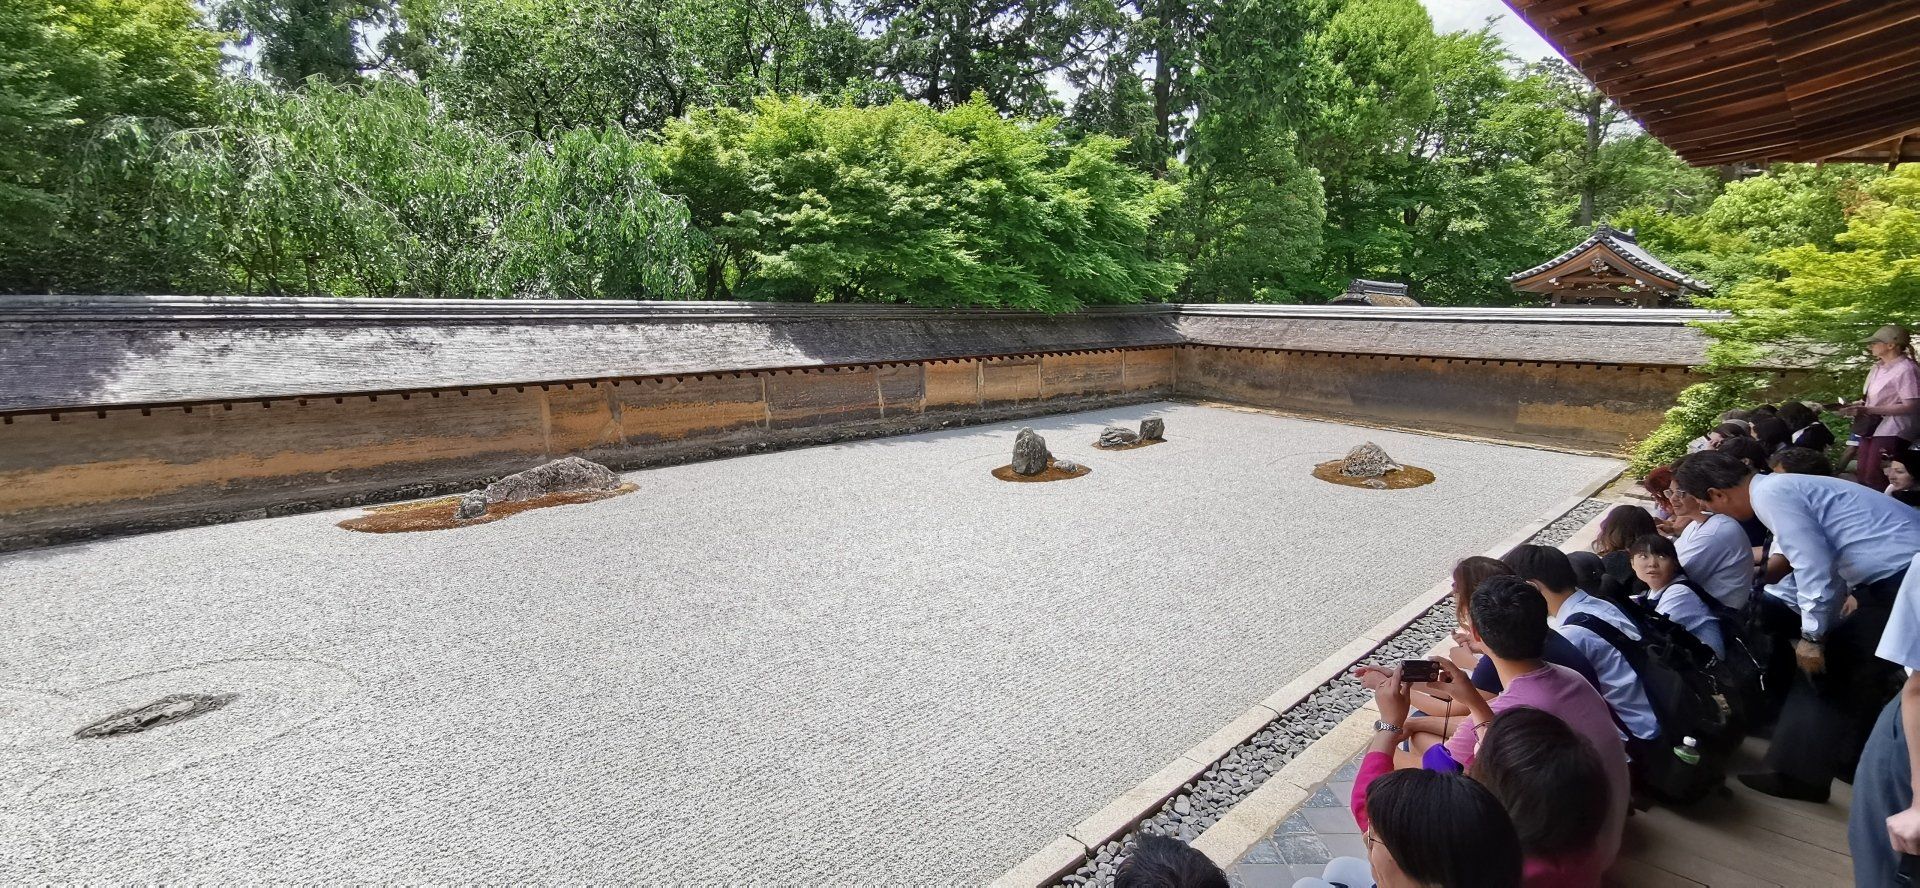 Zen-Tempel; Ryoan-ji;  Kyoto;  Japan-Reise; Japan-Rundreise; Japan-Gruppenreise; Japan-Bahnreise; www.japan-tours.de